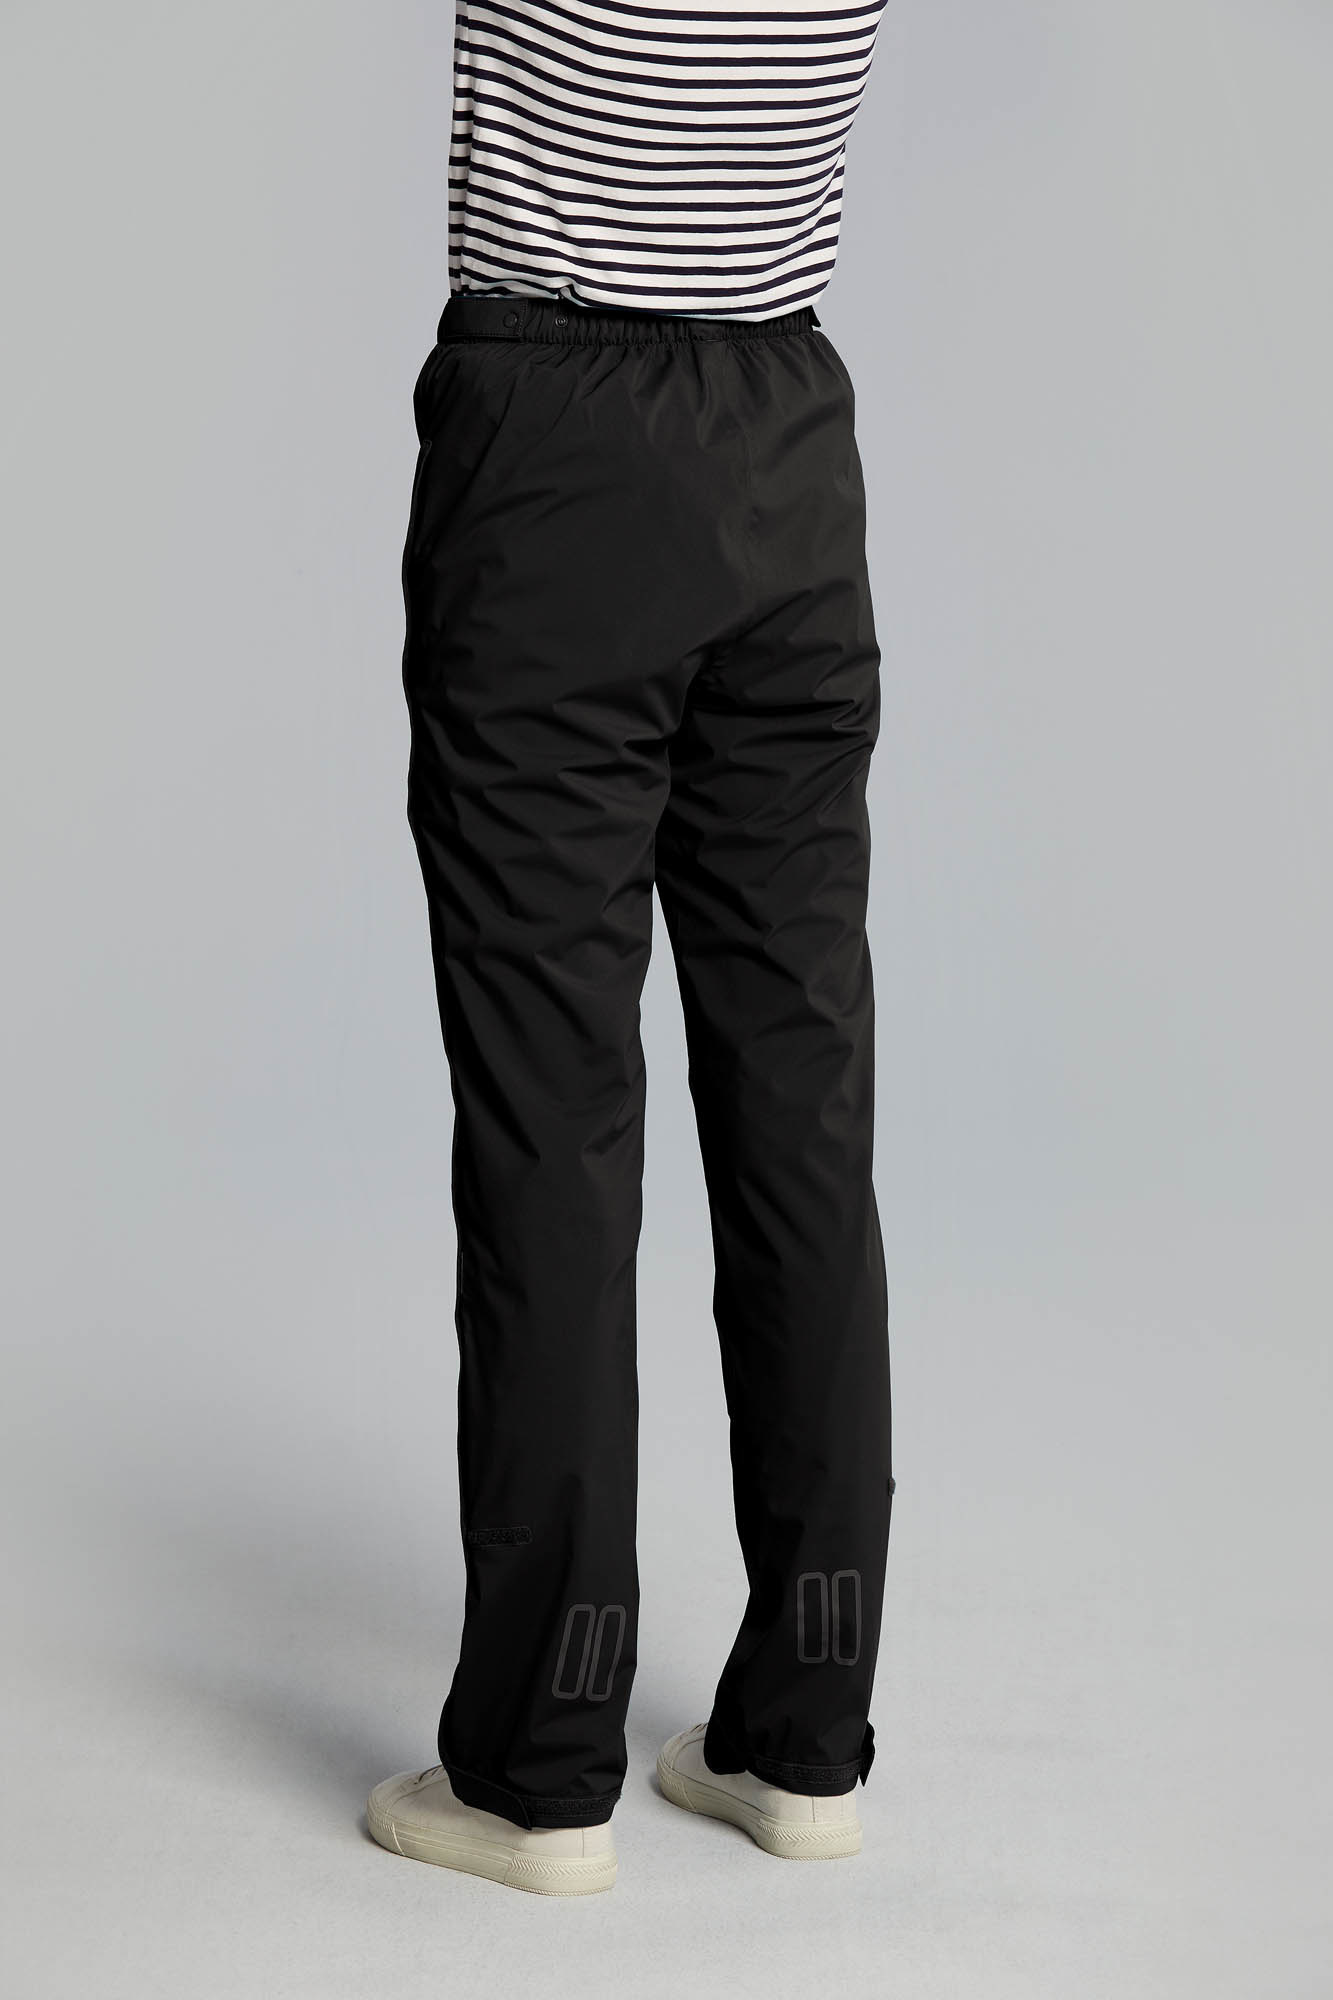 Wayleb Pantalon de Pluie Femme et Homme Unisexe Coupe-Vent Pantalon Imperméable Séchage Rapide Léger Pants avec 3 Poches Zippées pour Randonée Temps Huimide Extérieur 